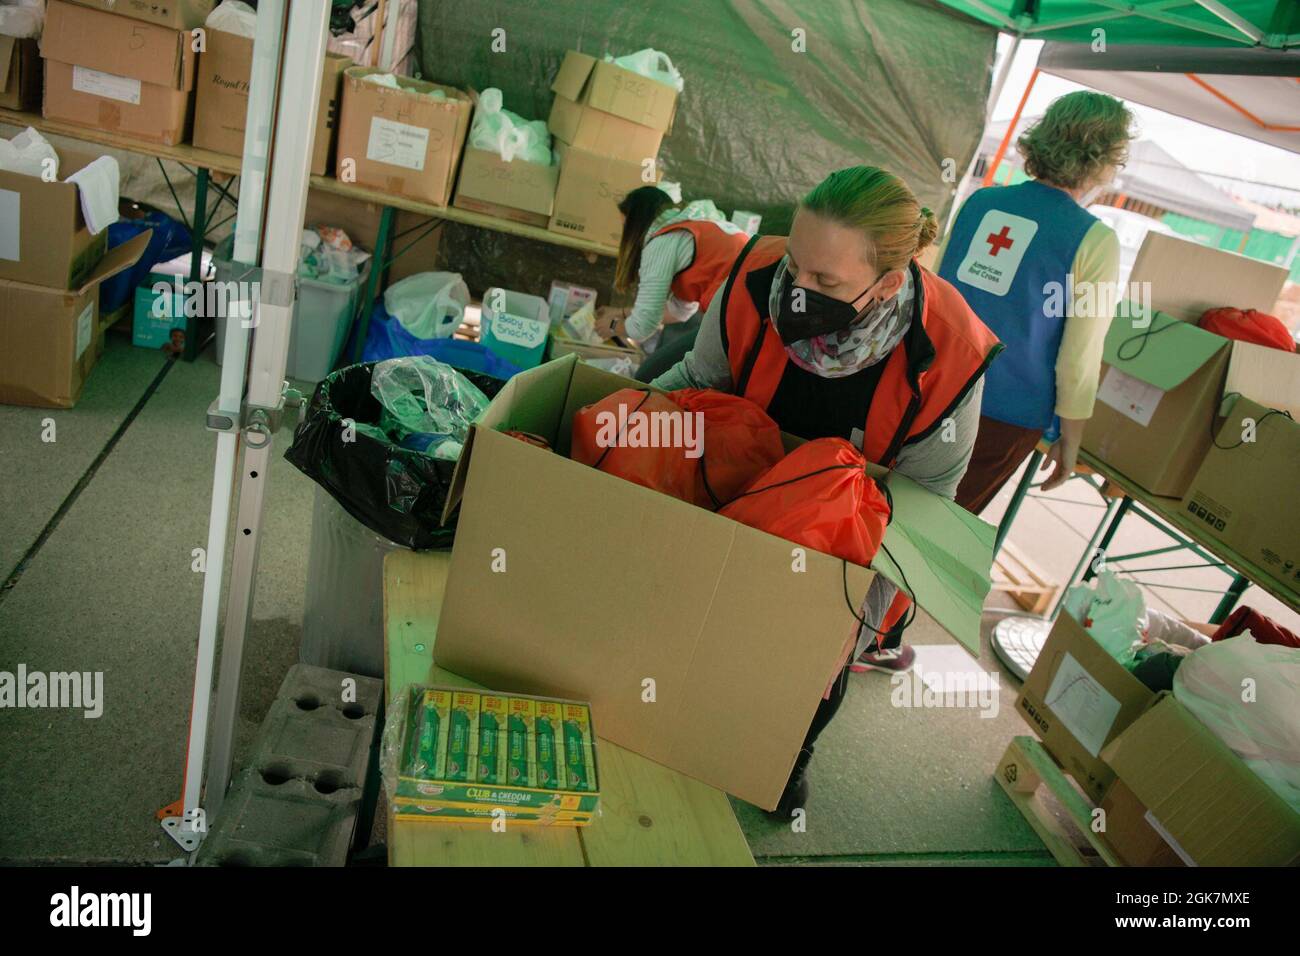 Mitglieder des Roten Kreuzes bereiten sich auf die Ankunft von Evakuierten  aus Afghanistan im Rahmen der Operation Allies Refuge auf dem  Luftwaffenstützpunkt Ramstein, Deutschland, am 27. August 2021 vor. Das  Rote Kreuz